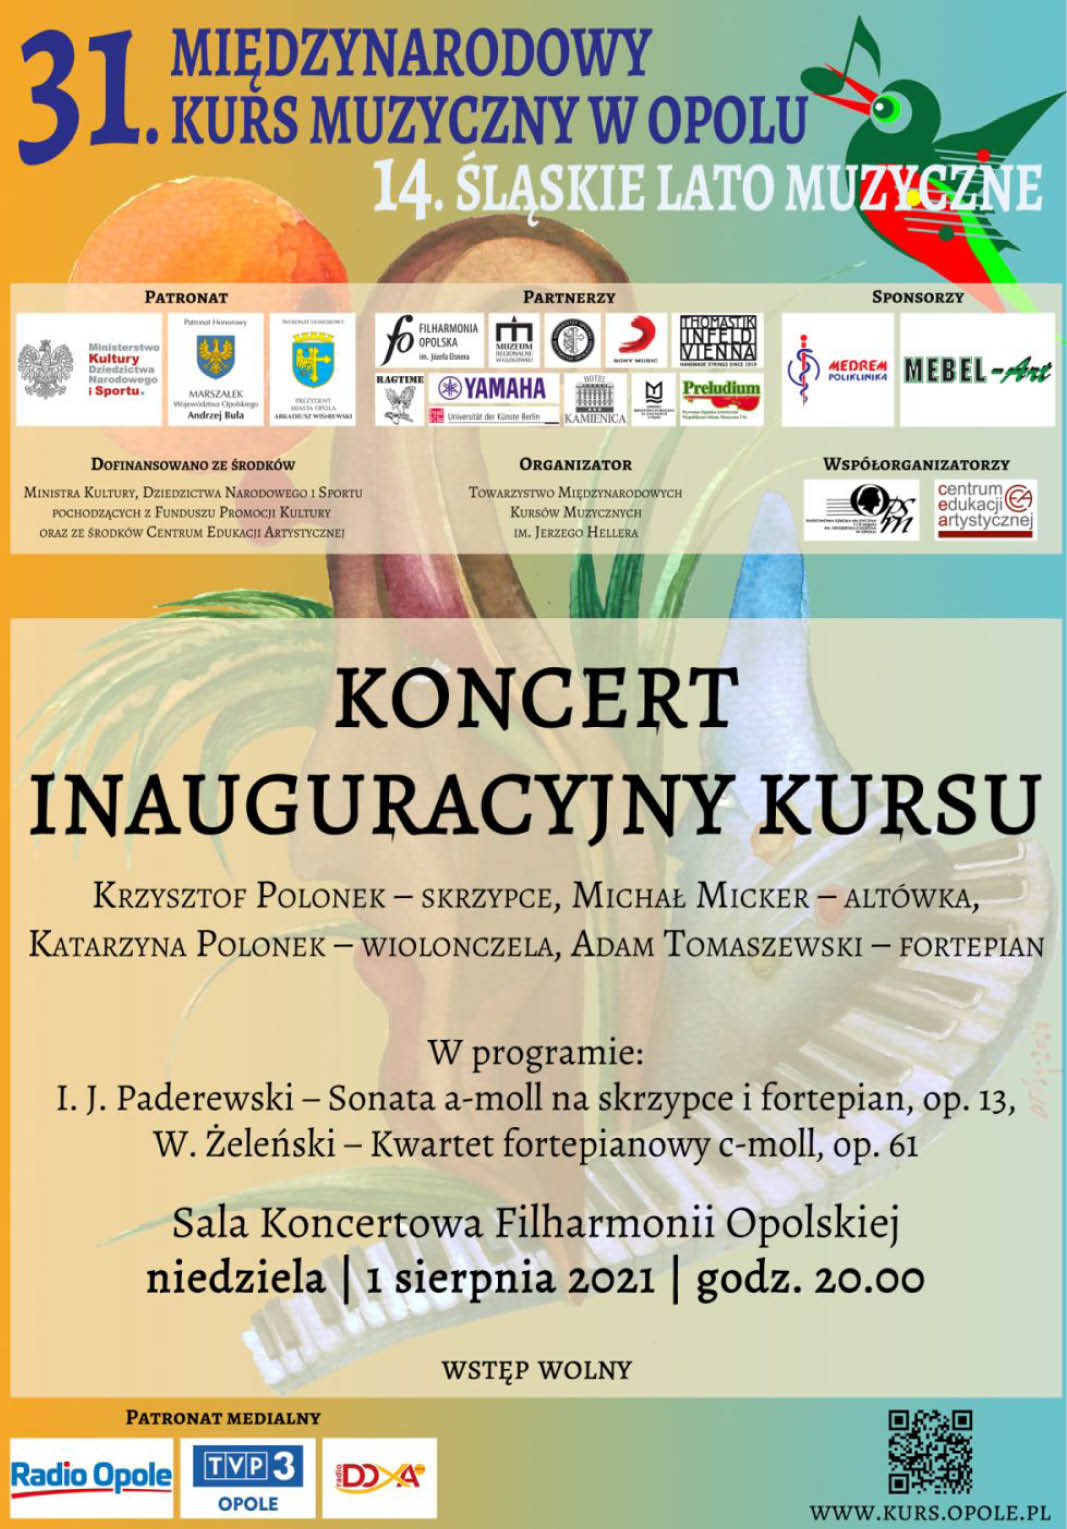 Koncert inauguracyjny 31. Międzynarodowego Kursu Muzycznego w Opolu